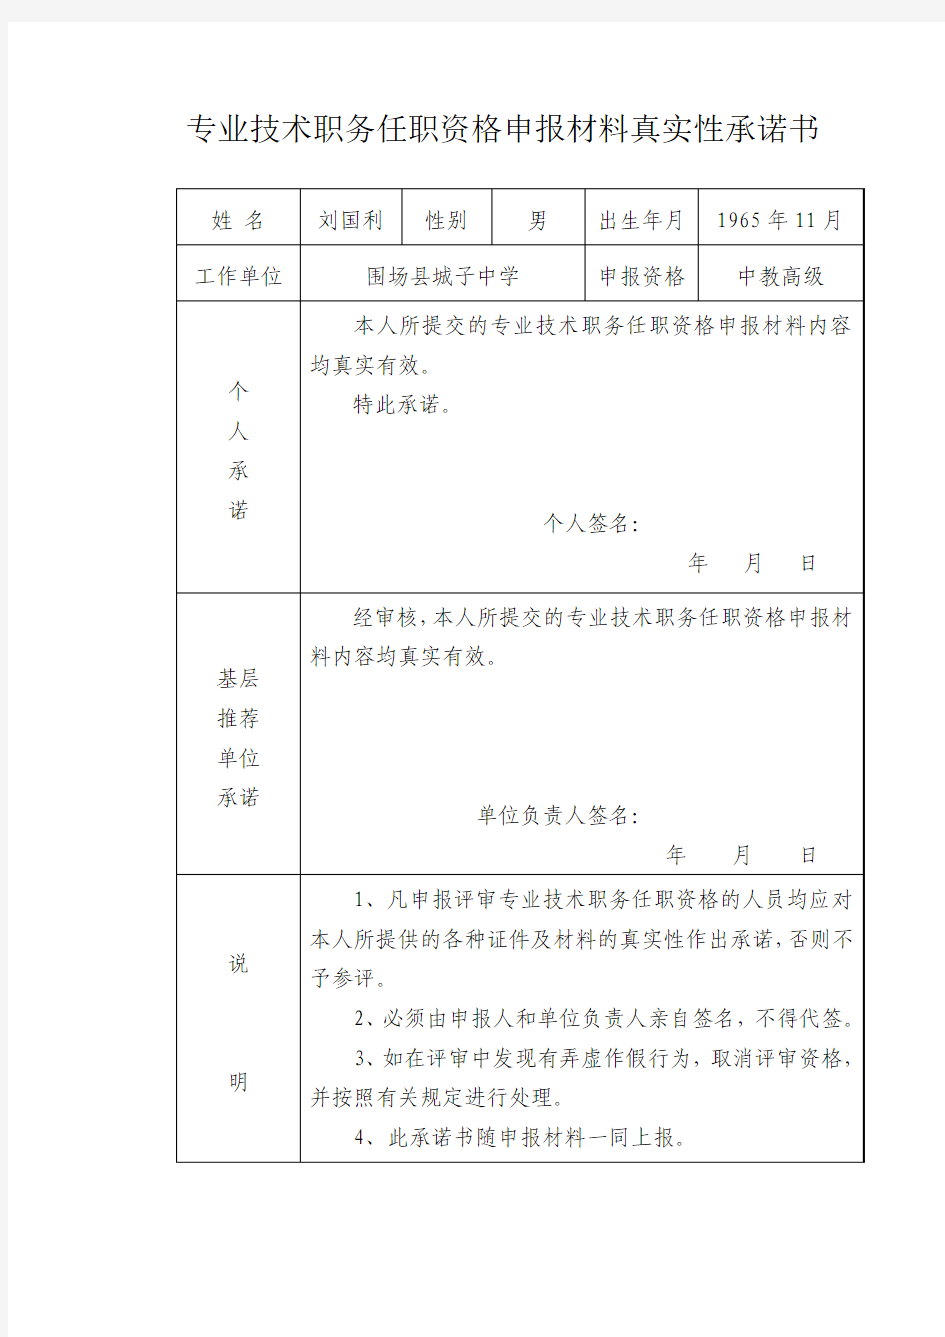 河北省评中教高级教师用专业技术职务任职资格申报材料真实性承诺书